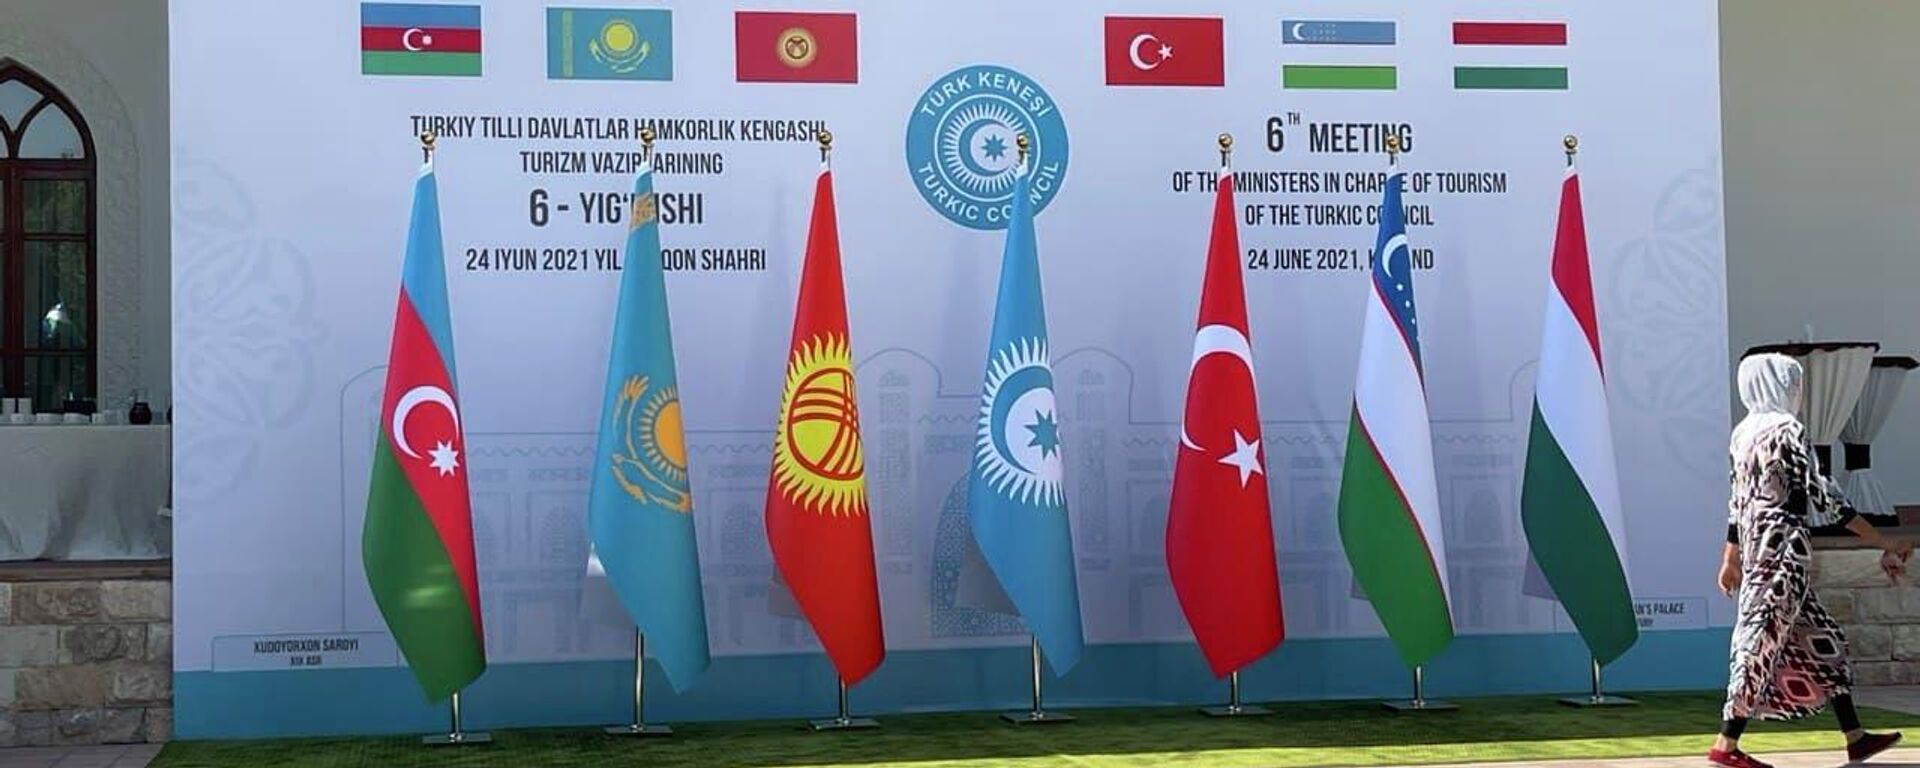 VI заседание министров туризма Совета сотрудничества тюркоязычных государств в Коканде - Sputnik Узбекистан, 1920, 24.06.2021